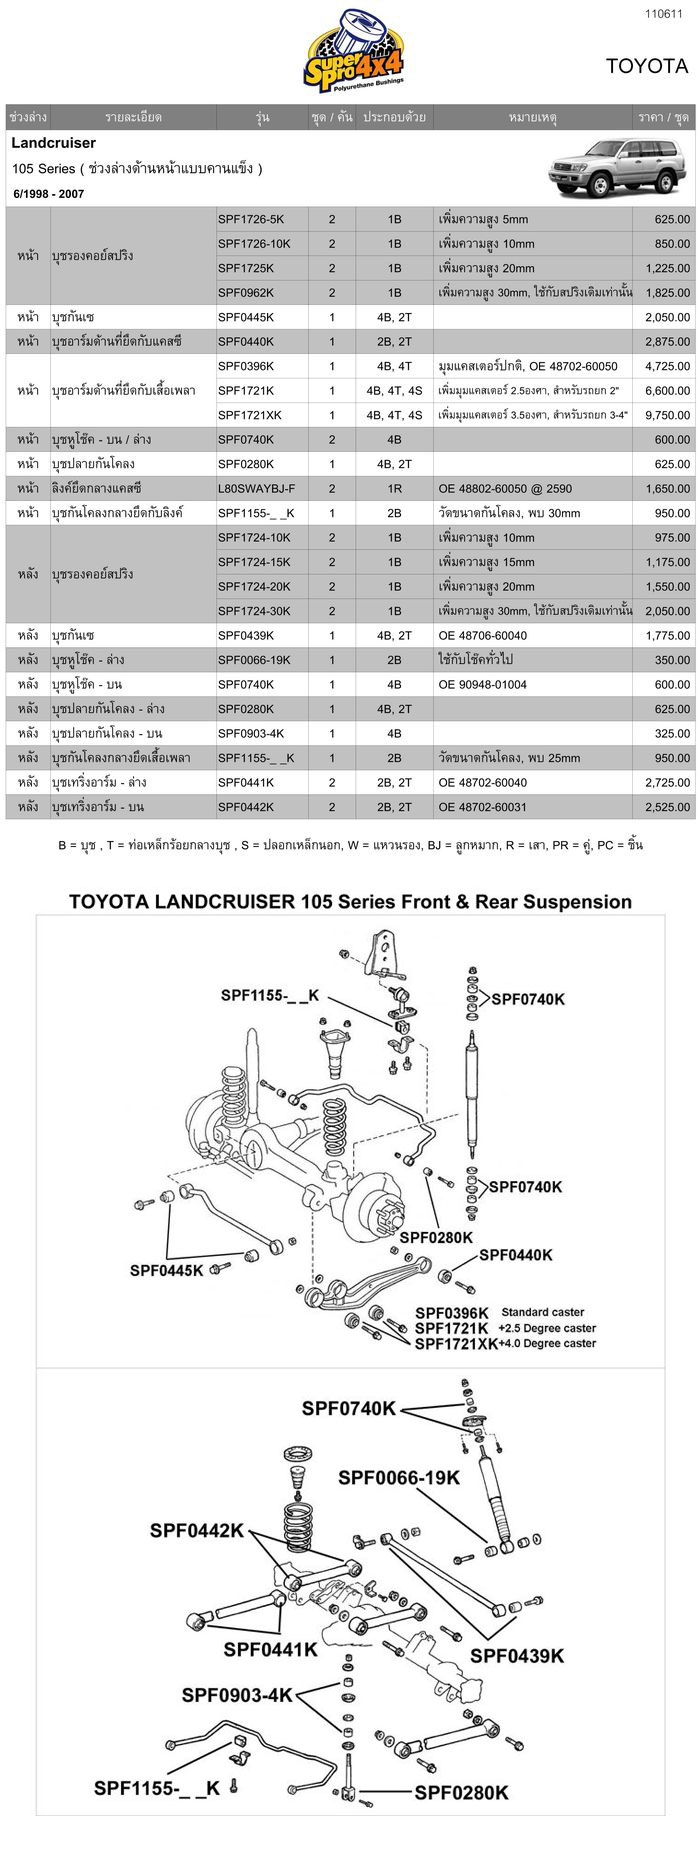 รุ่น Toyota Land Cruiser 105 series (Solid Front Suspension)ลิงค์เพื่อดาวน์โหลดรายละเอียดของ Toyota Land Cruiser 105 series ( Solid Front Suspension )

